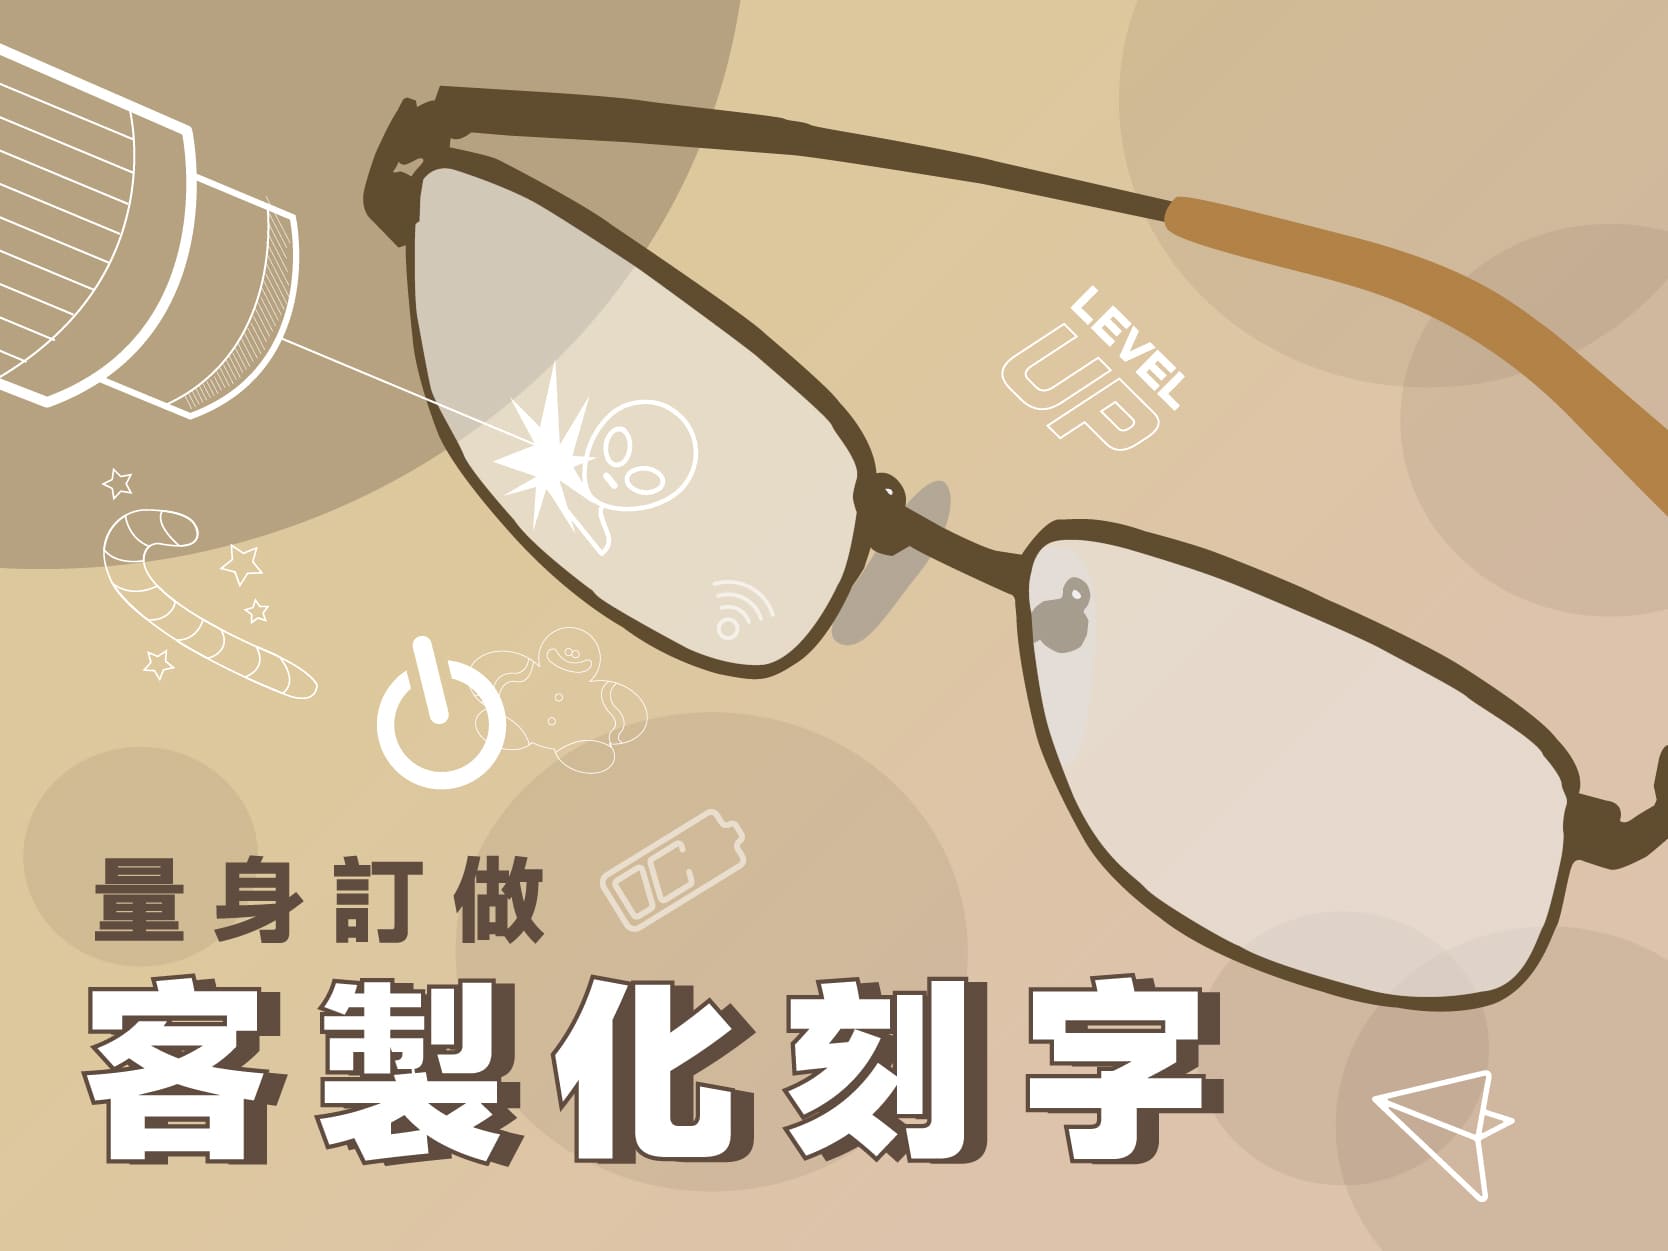 配眼鏡,太陽眼鏡 | LOHAS樂活眼鏡